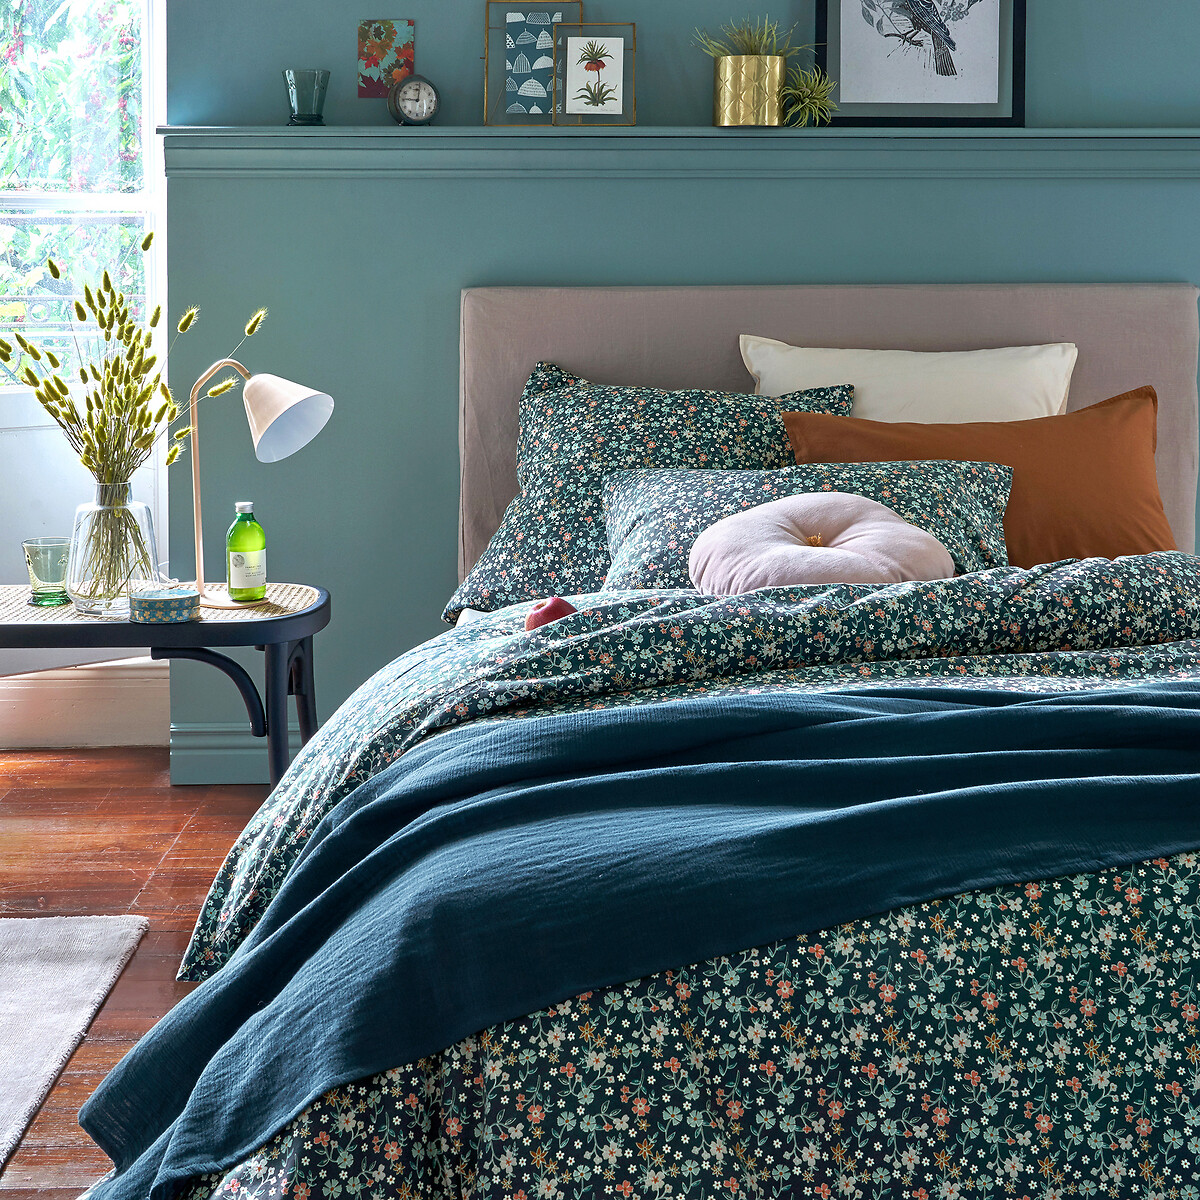 Чехол LaRedoute На изголовье кровати из стиранного льна Abella 160 x 85 см зеленый, размер 160 x 85 см - фото 2